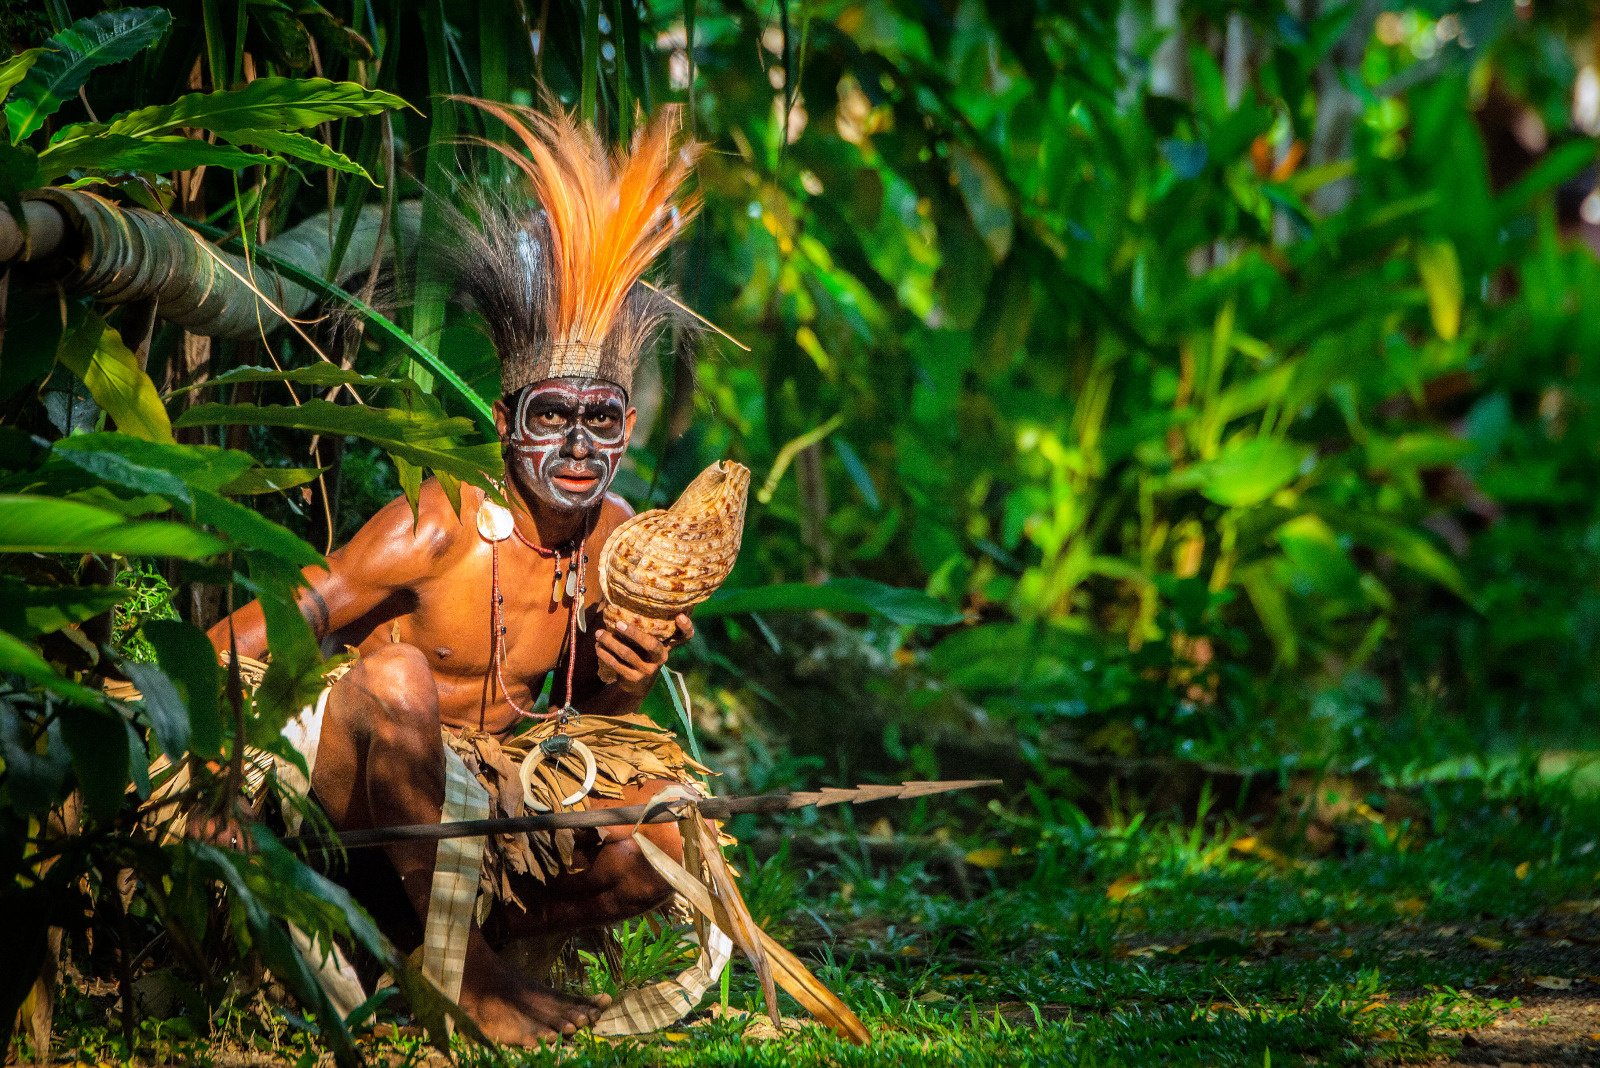 1_Papouasie-Nouvelle-Guinee-Alotau_Papou-Costume-traditionnel-Danse©StudioPONANT_Margaux Coupez.jpeg